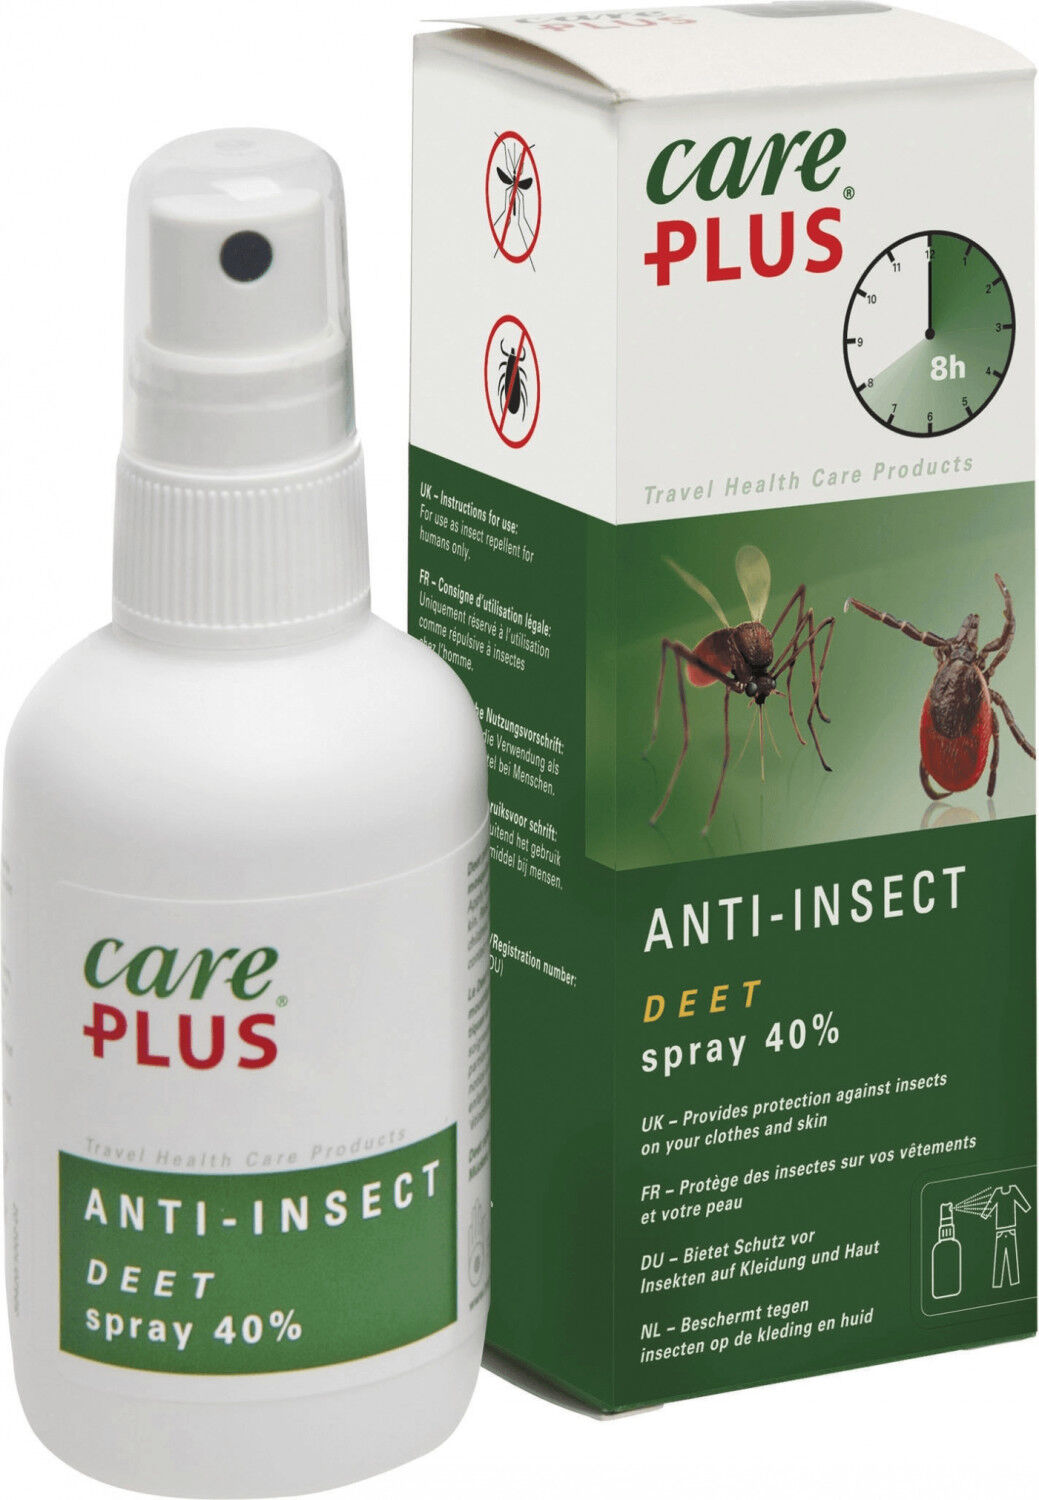 Care Plus Anti-Insect - Deet spray 40% - Protección contra insectos